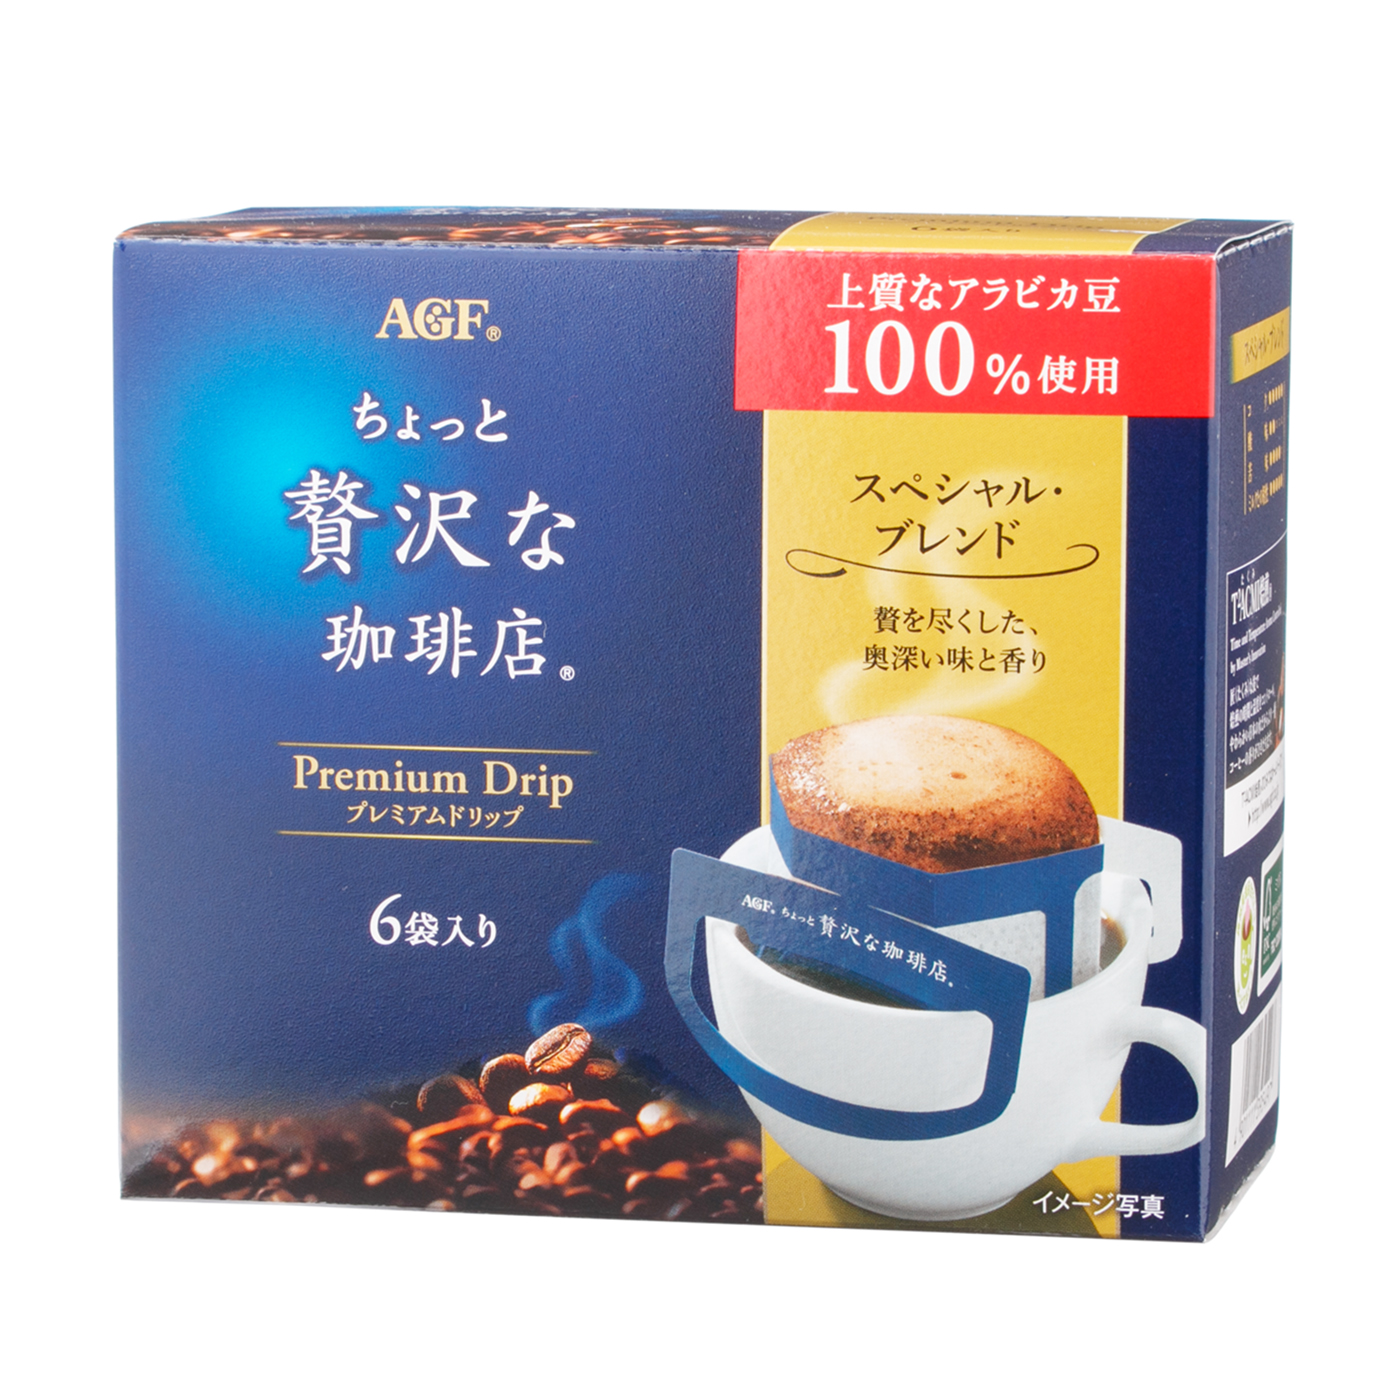 AGF ブレンディ レギュラーコーヒー ドリップコーヒー スペシャルブレンド(7g*100袋入*2箱セット)